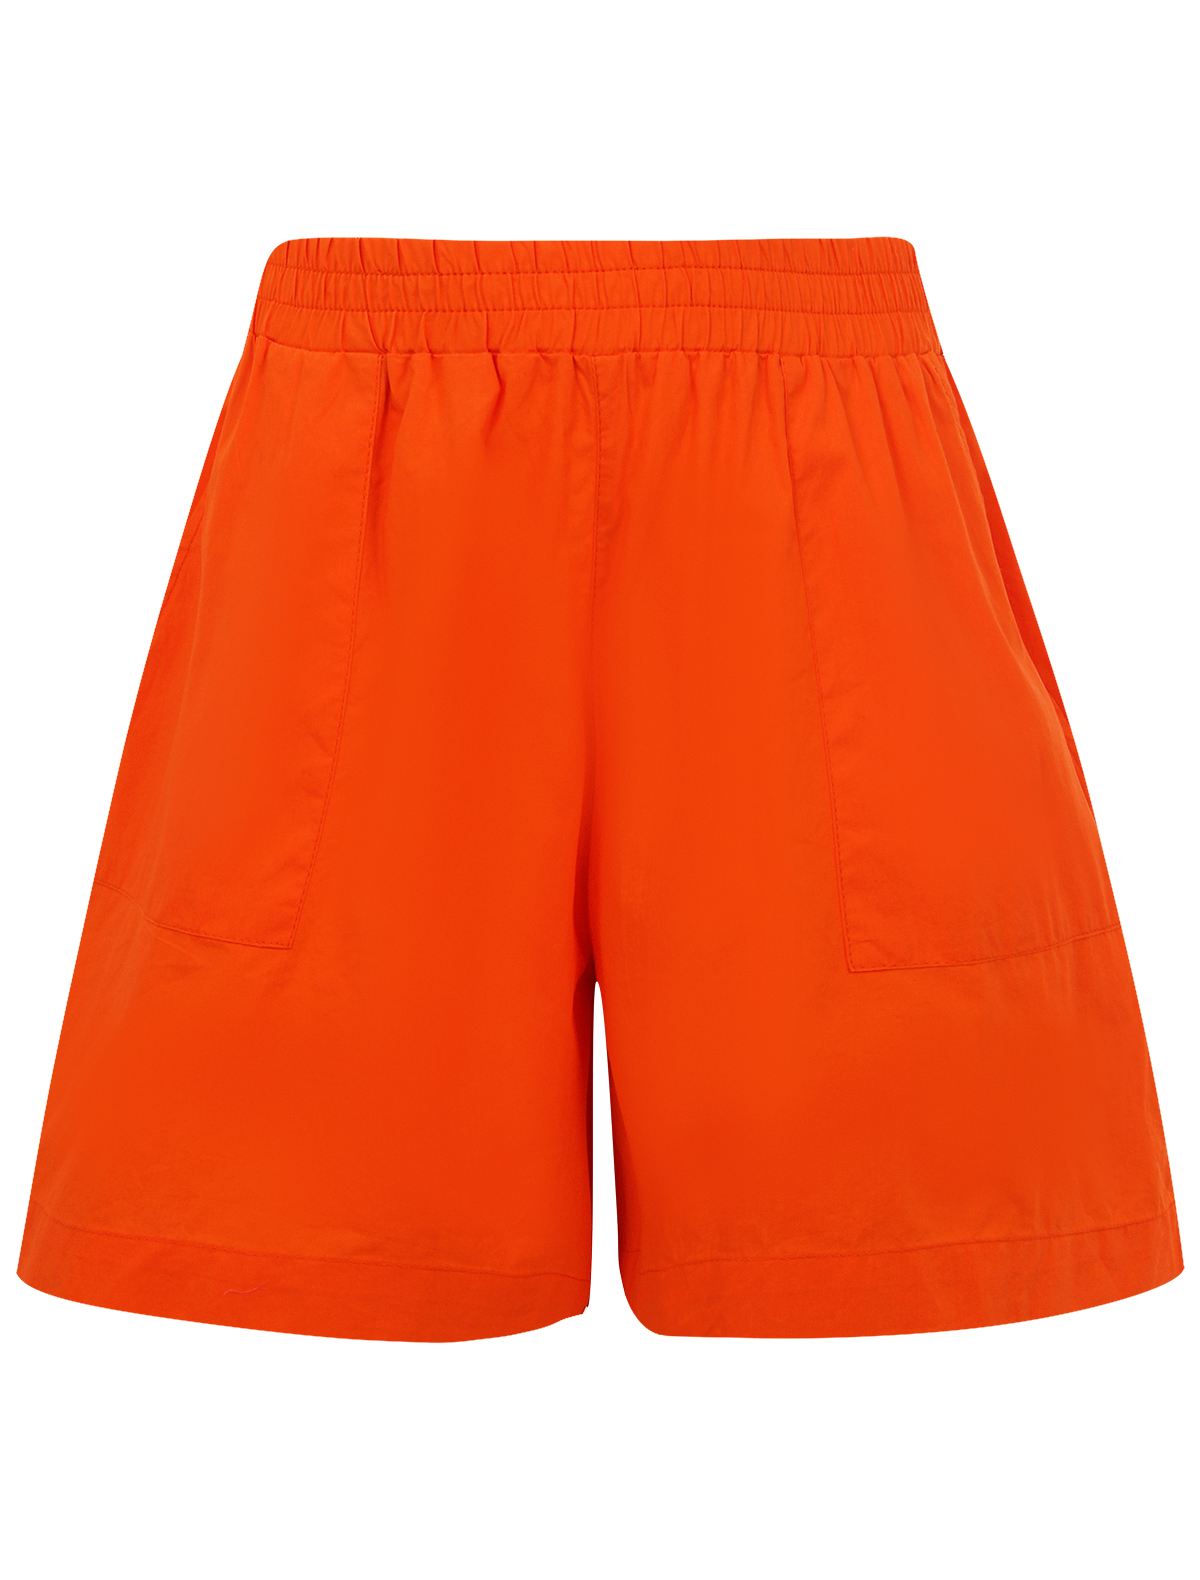 шорты max&co для девочки, оранжевые